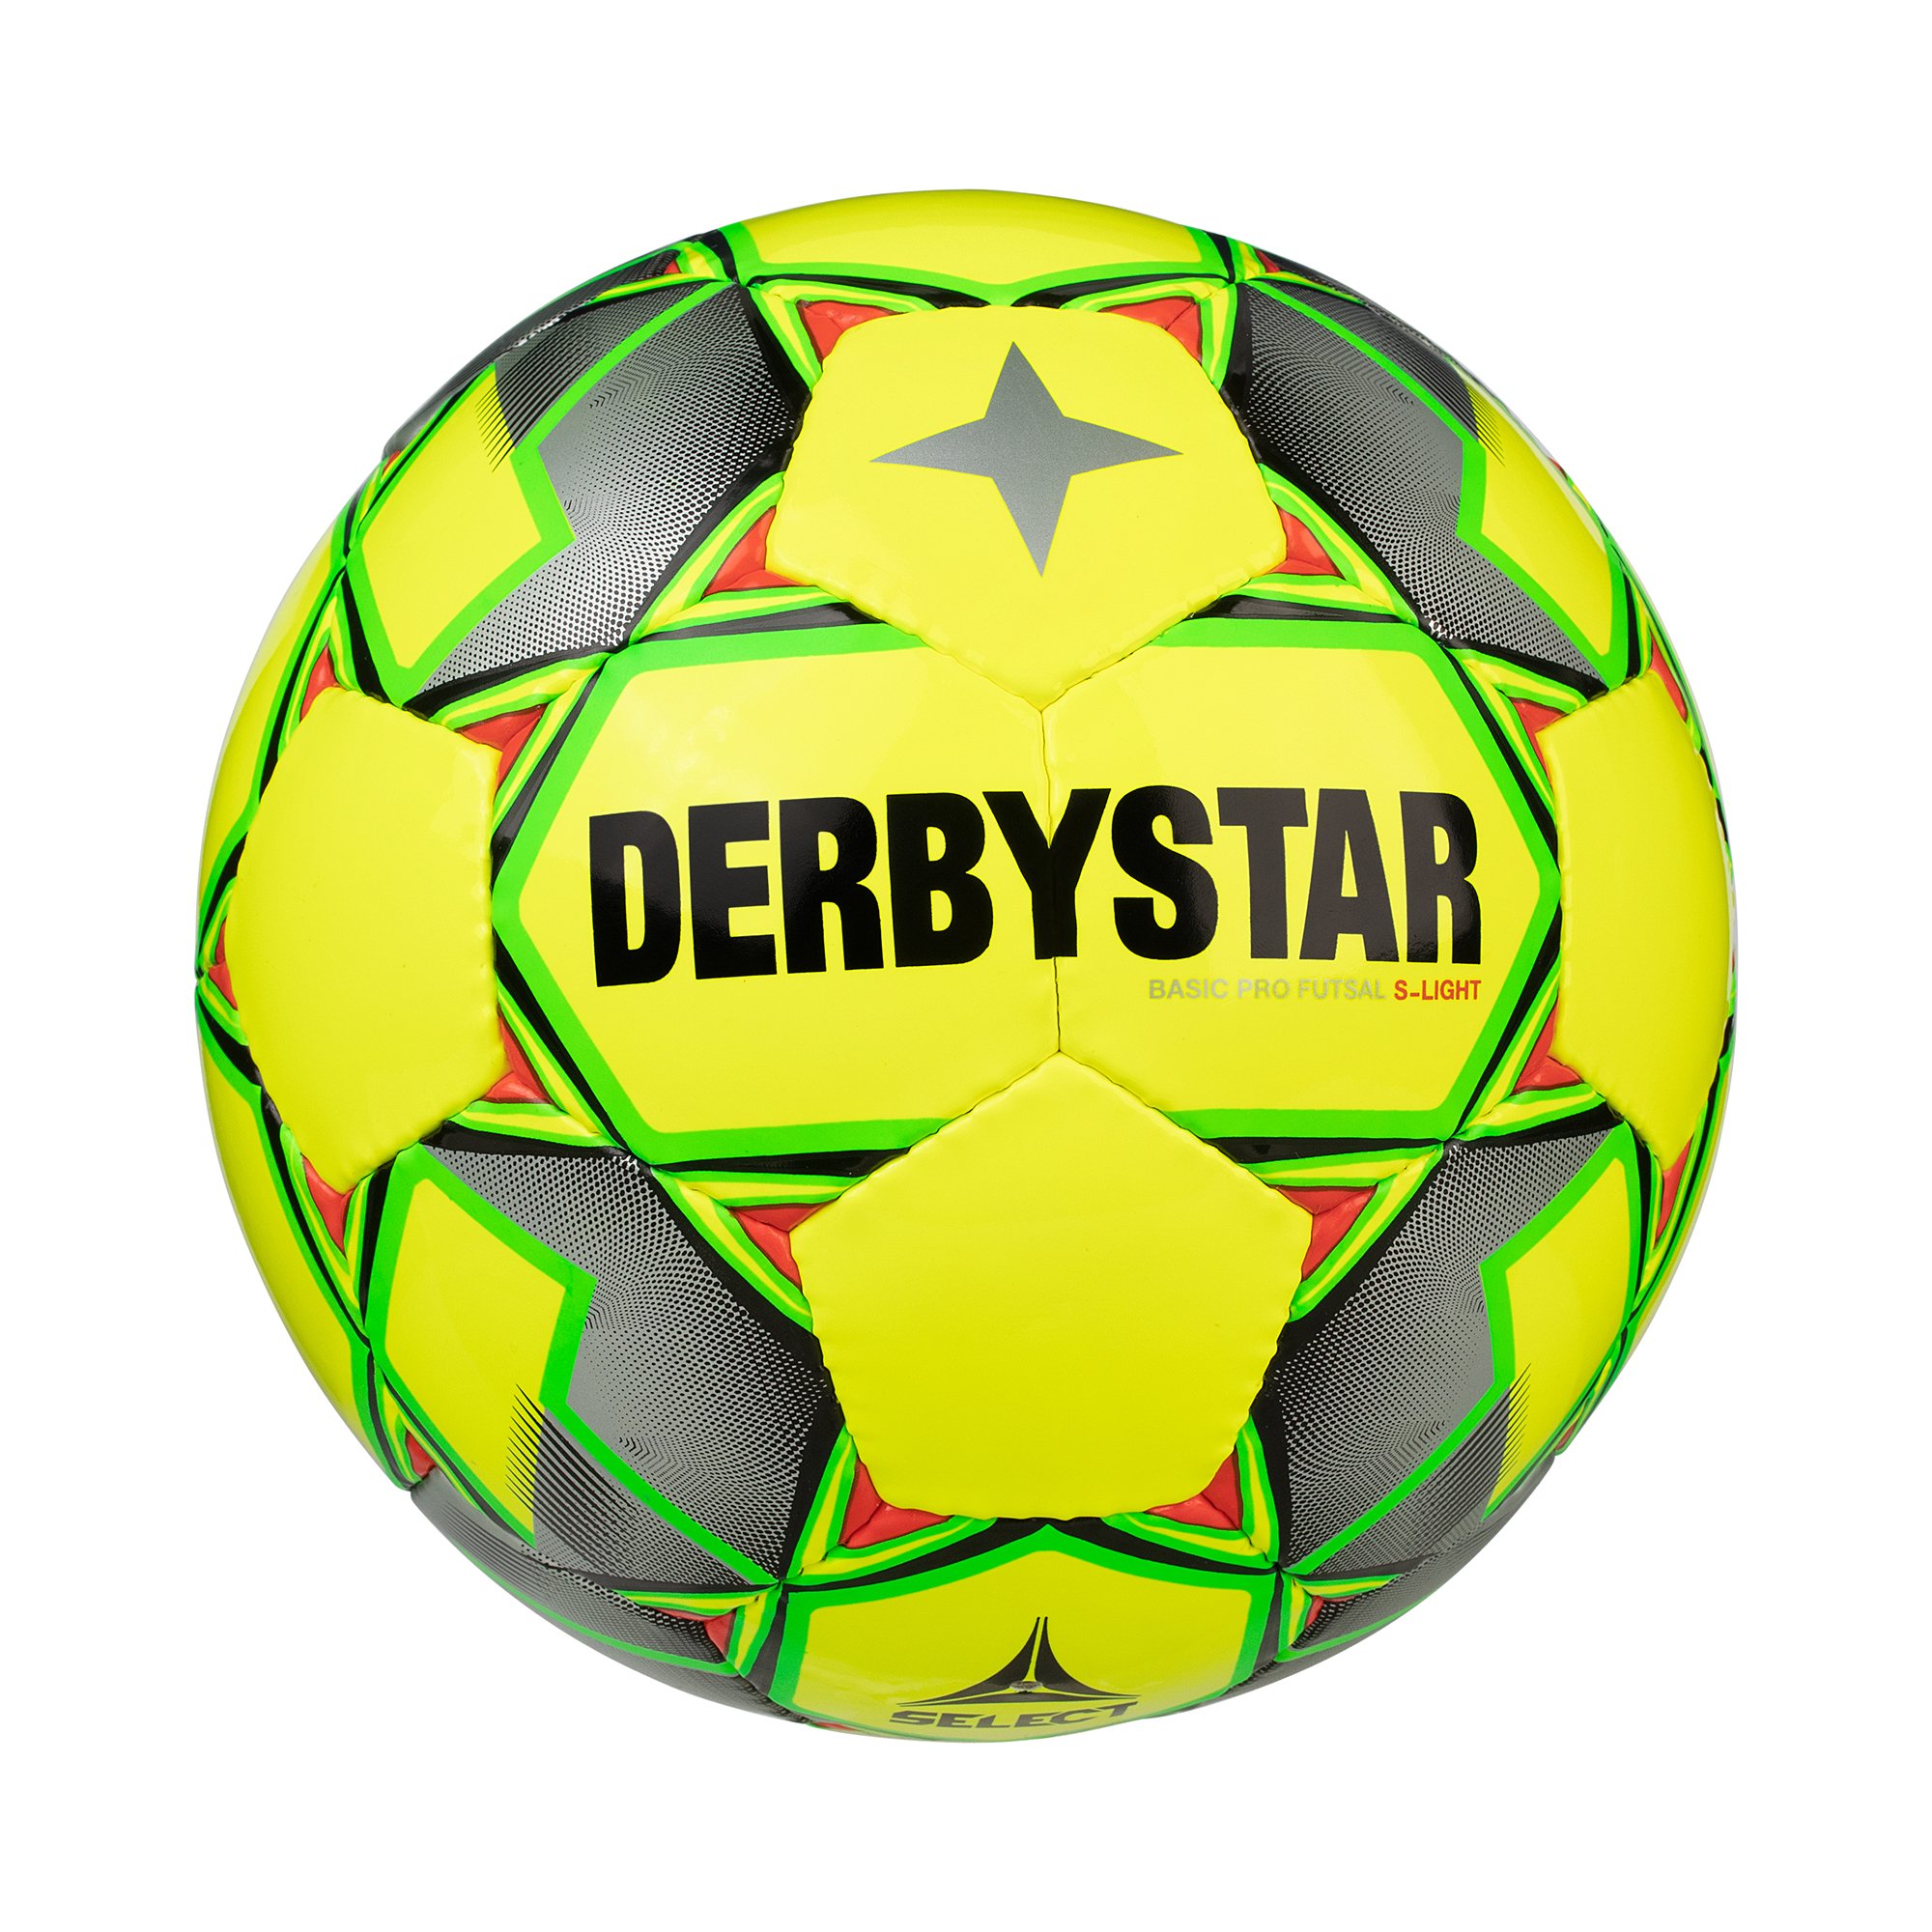 Derbystar Basic Pro S-Light Futsal